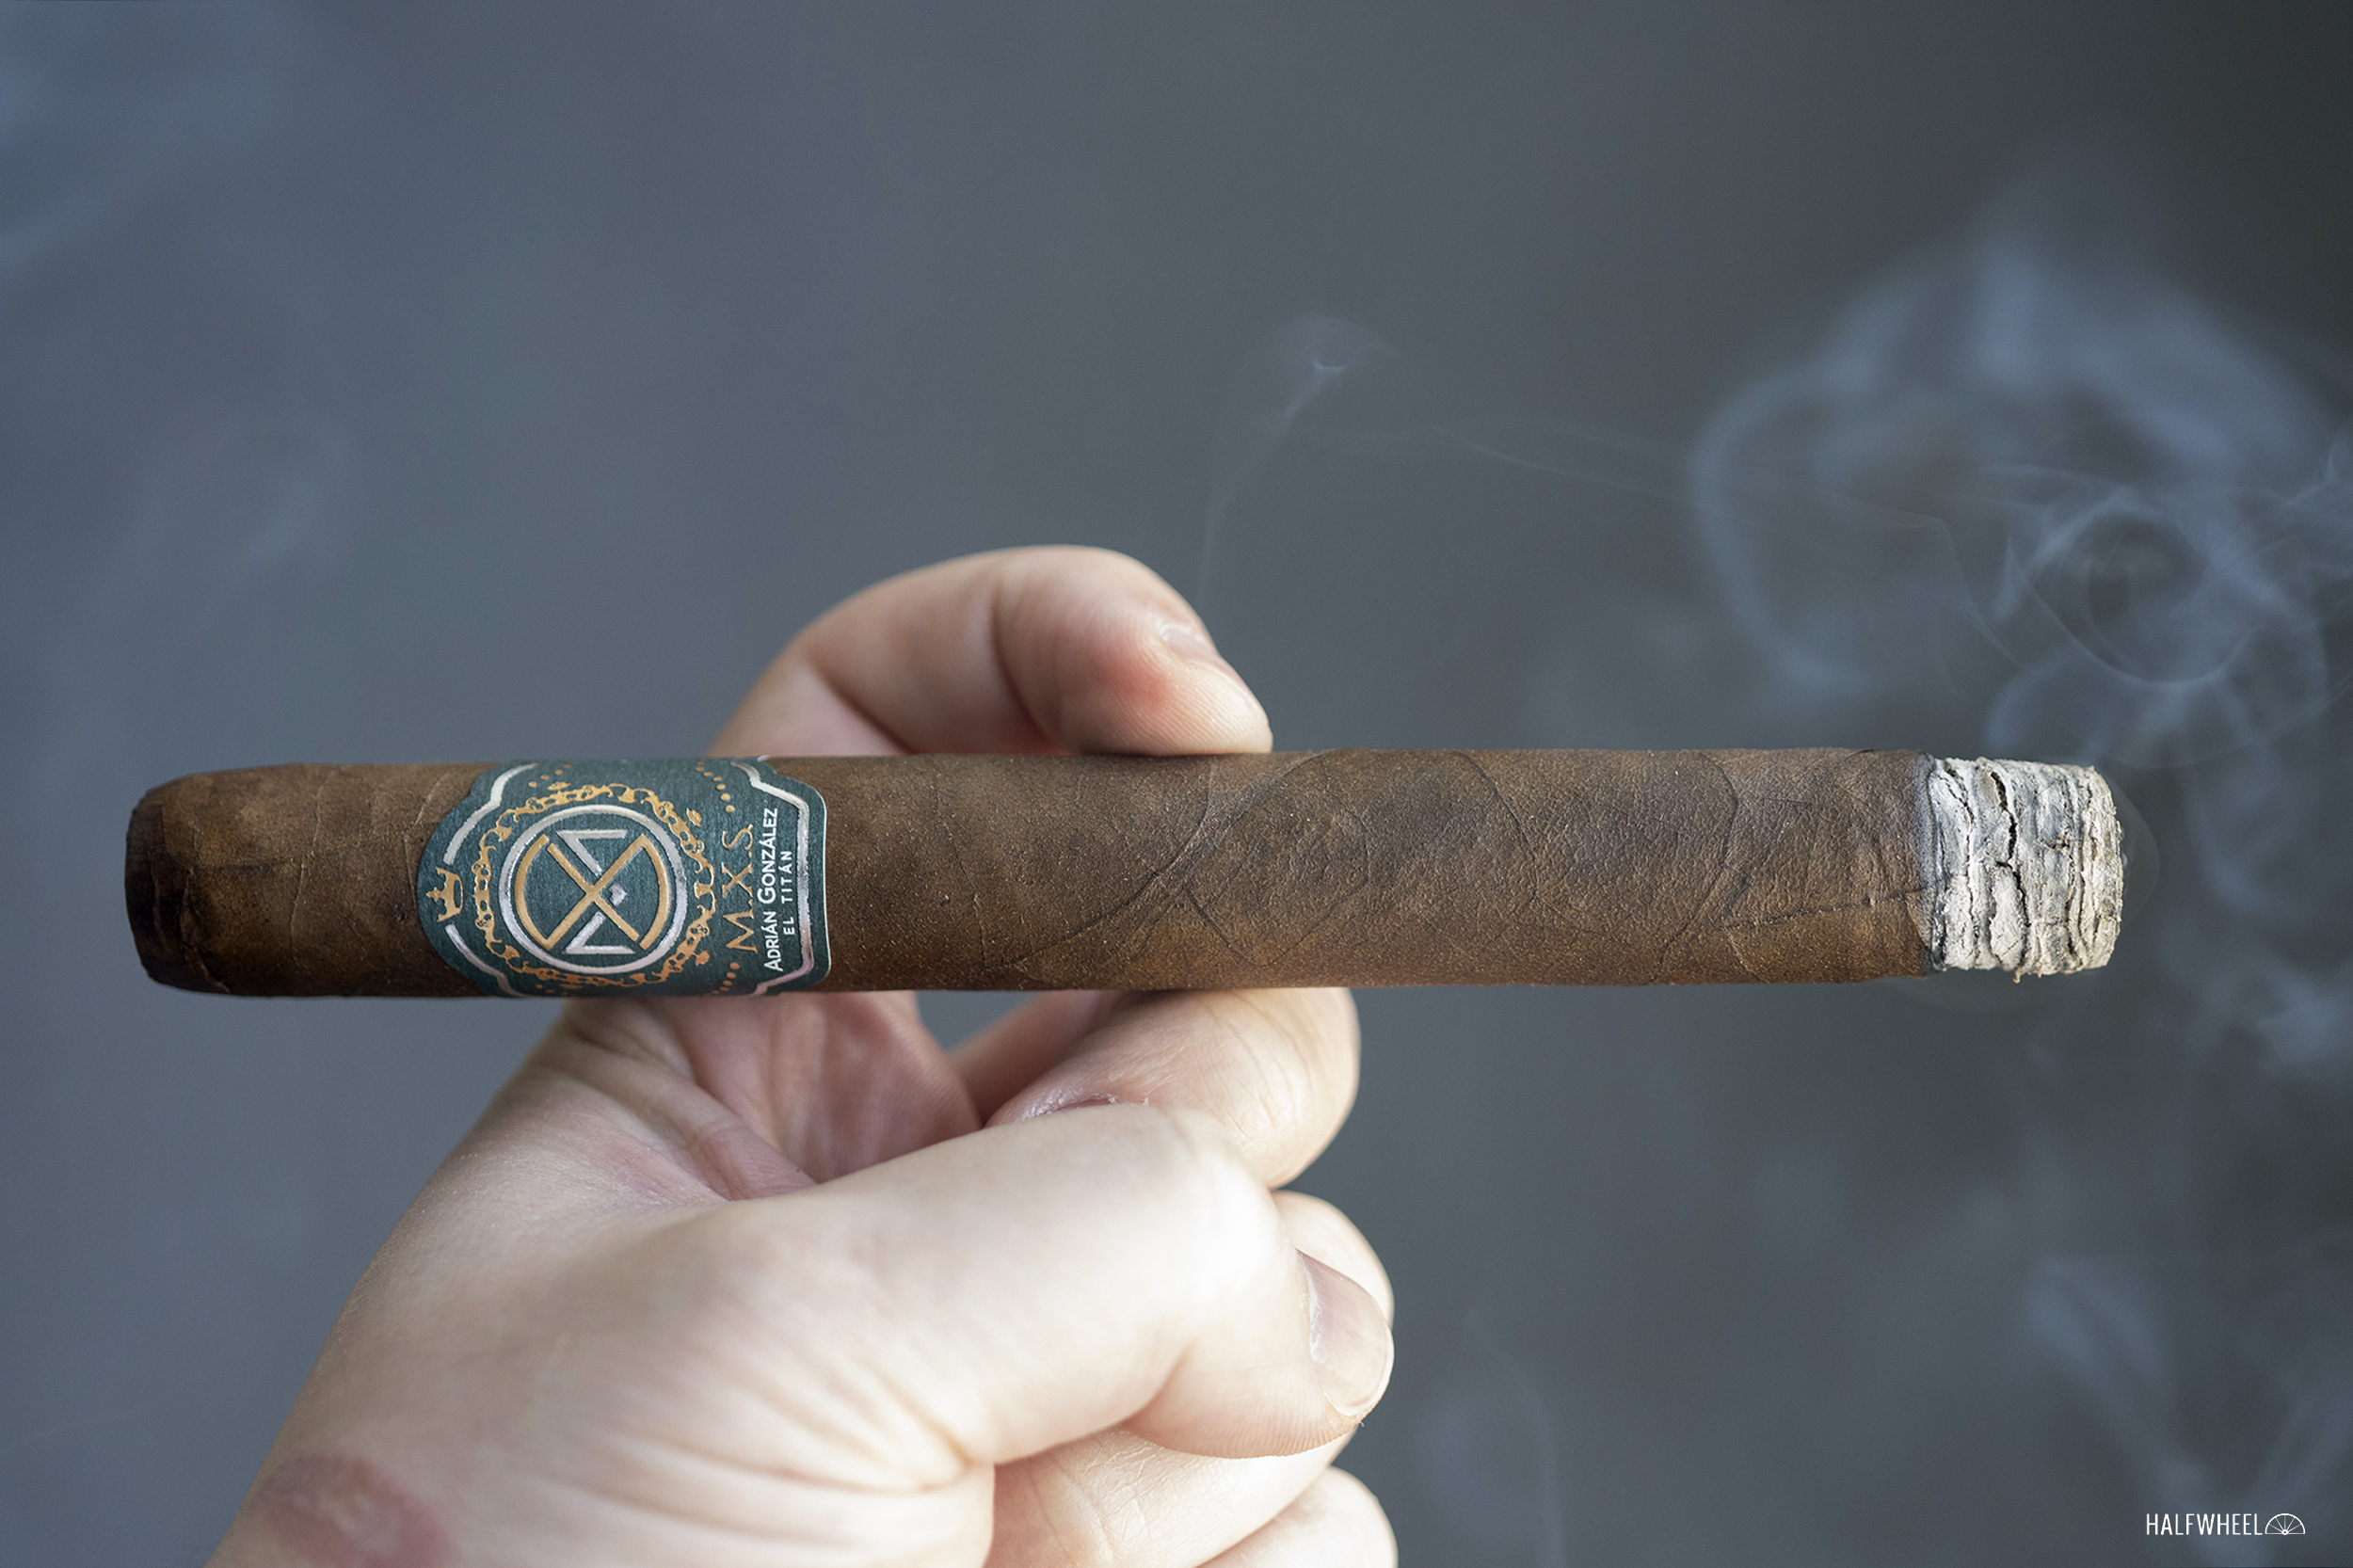 Cigar Review: M.X.S. Adrian Gonzalez El Titan Toro 